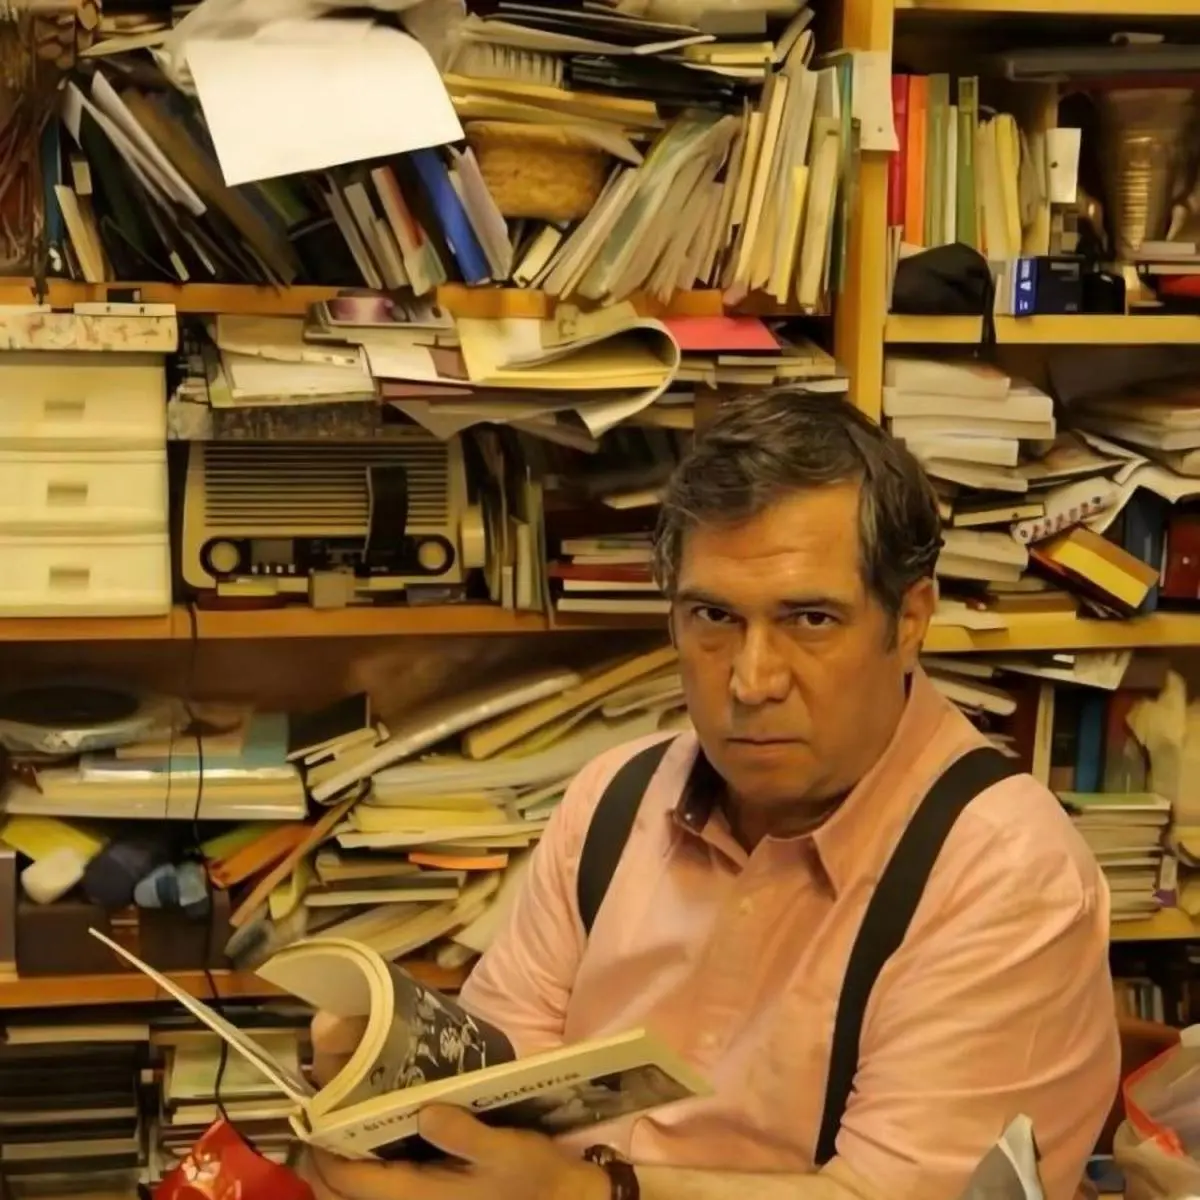 علی دهباشی نویسنده و سردبیر مجله بخارا در آستانه جراحی است | چراغ شب های بخارا همچنان روشن است